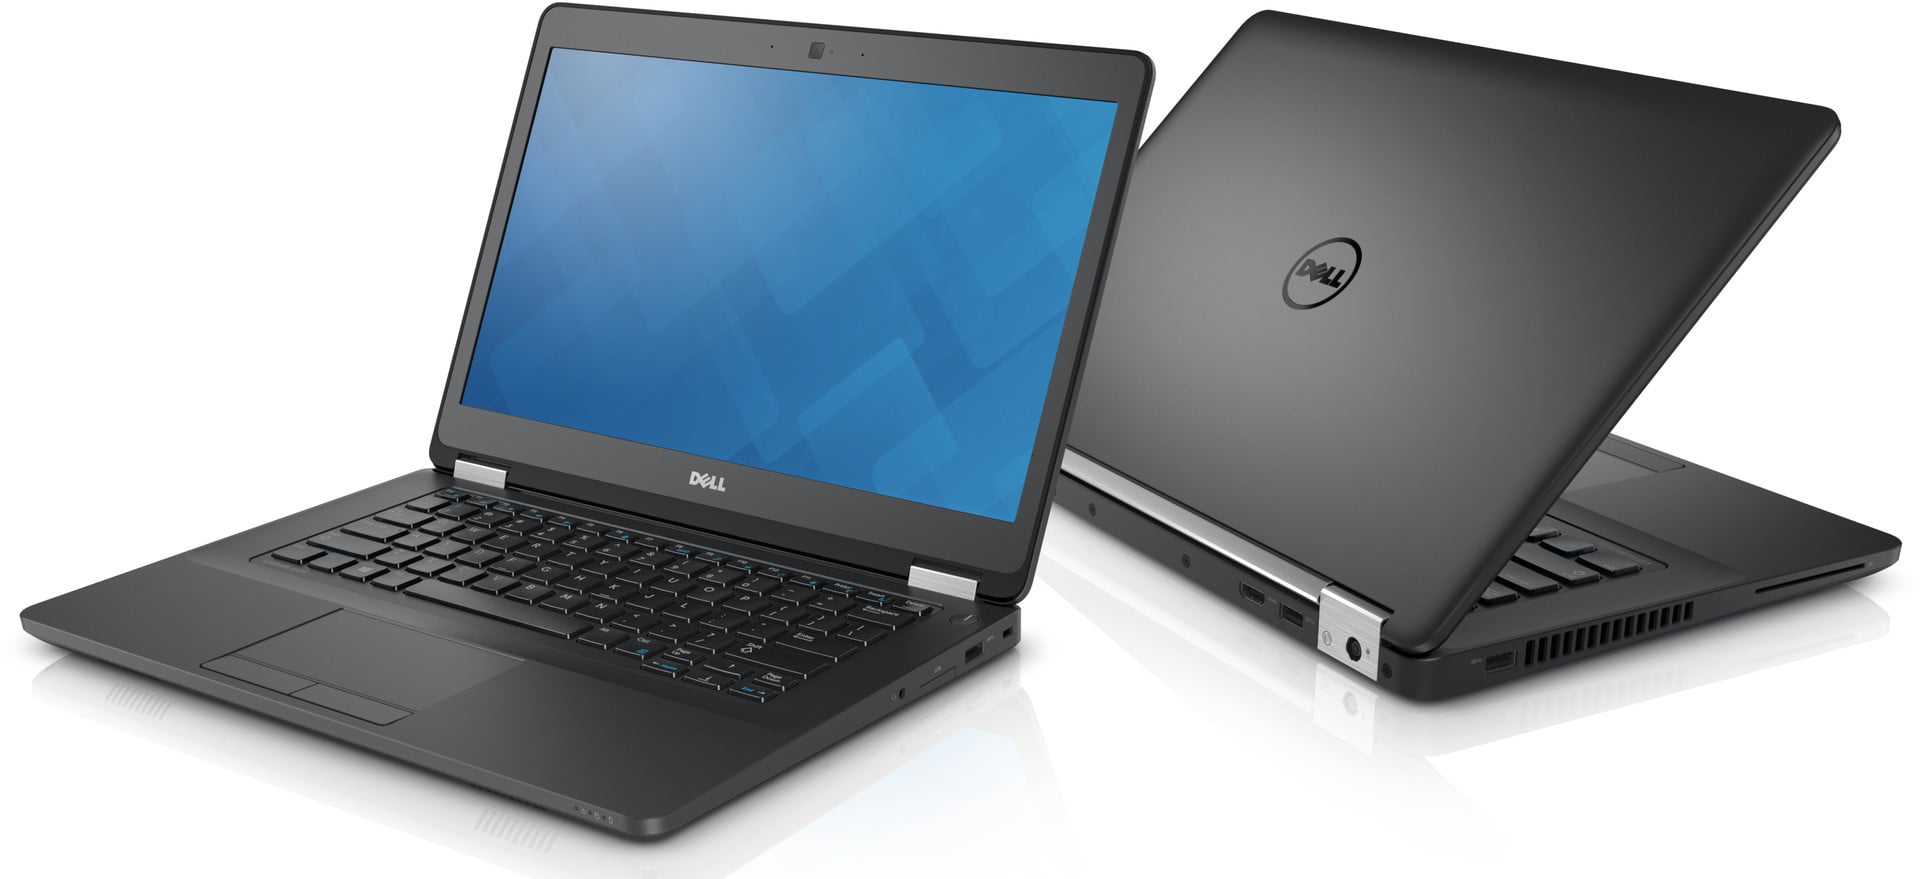 Dell Latitude E5470 HD Business Laptop Notebook PC (Intel Core i5 